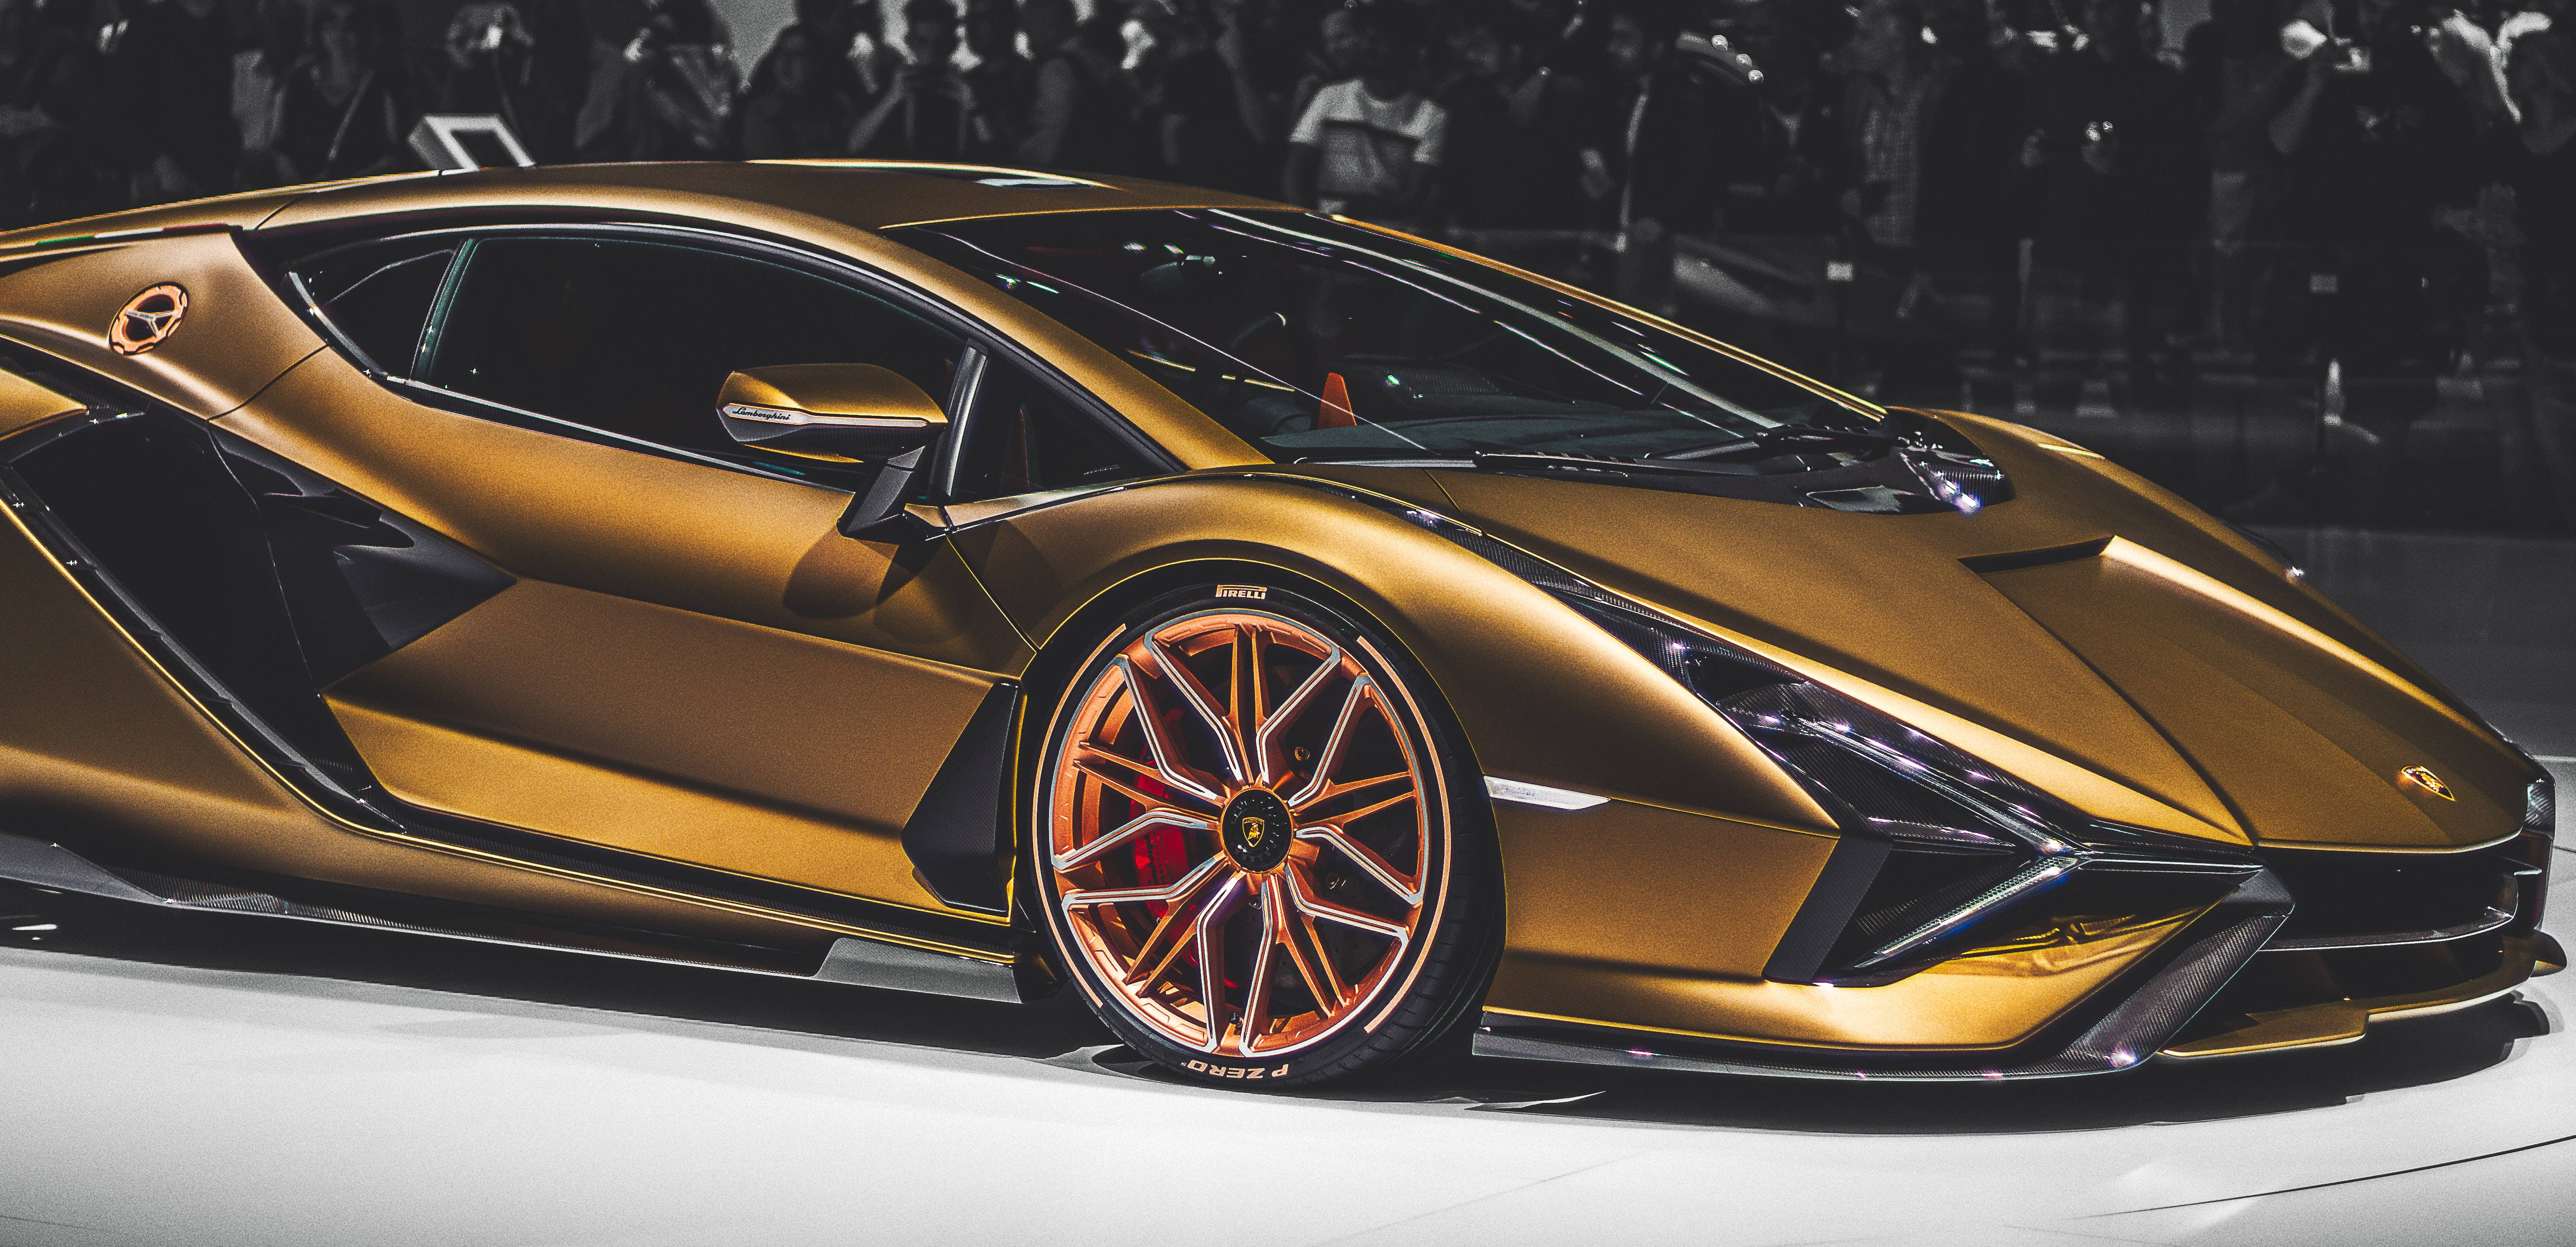 Marvelous Gold Iphone Lamborghini Display